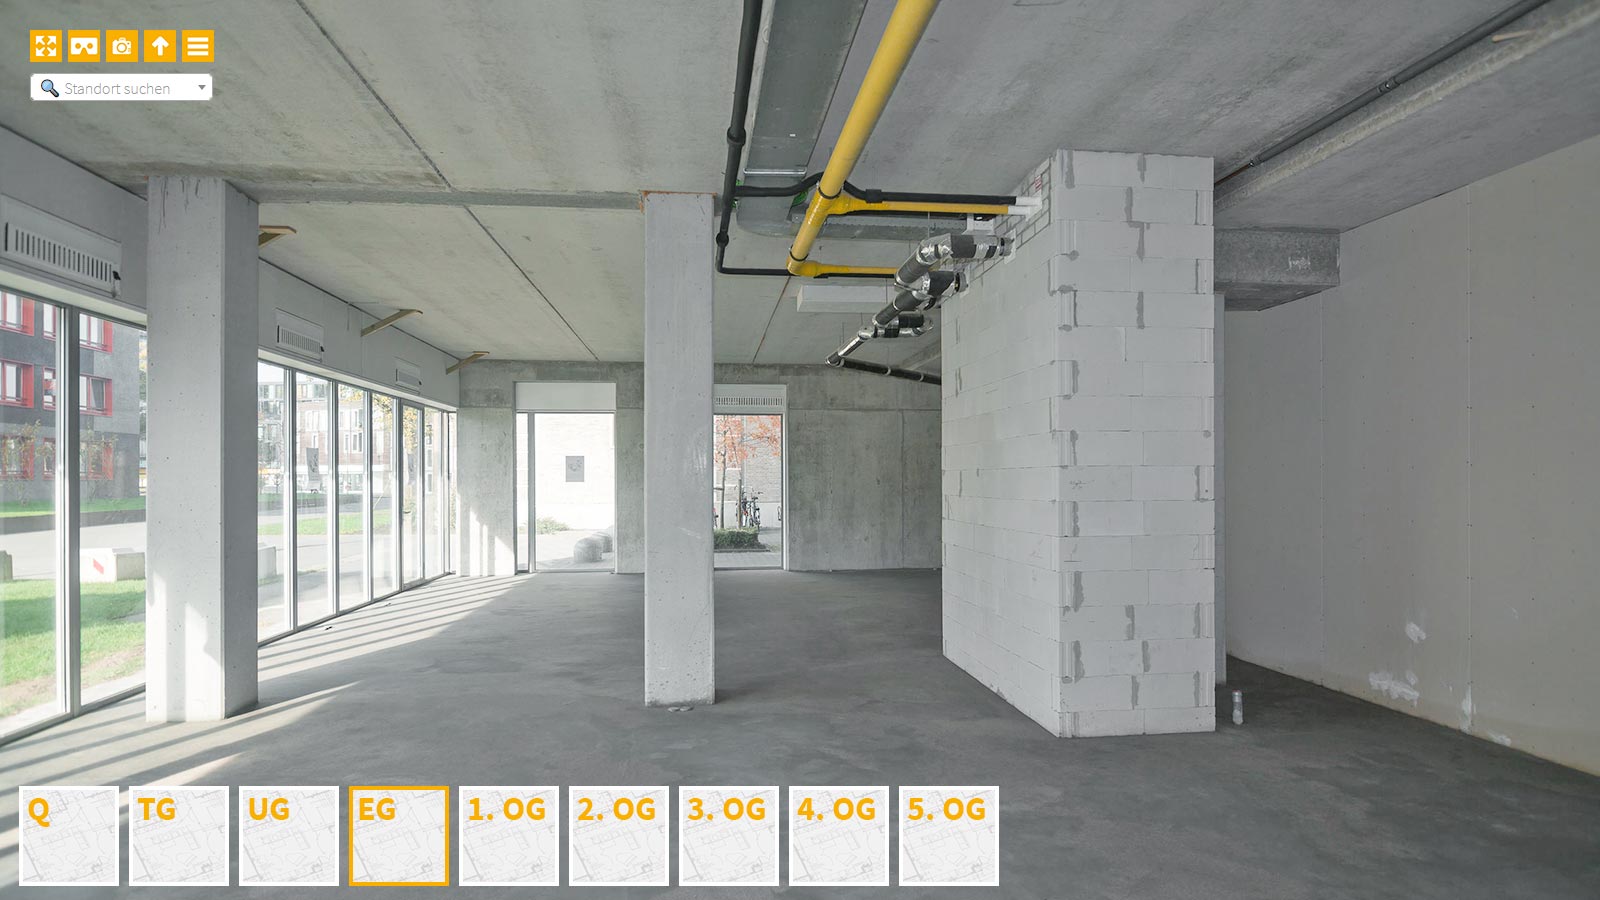 Baudokumentation 360 Grad bei gestörten Projekten in 


	


	


	


	


	


	


	


	


	


	Krefeld









, Bilddokumentation als virtueller Rundgang